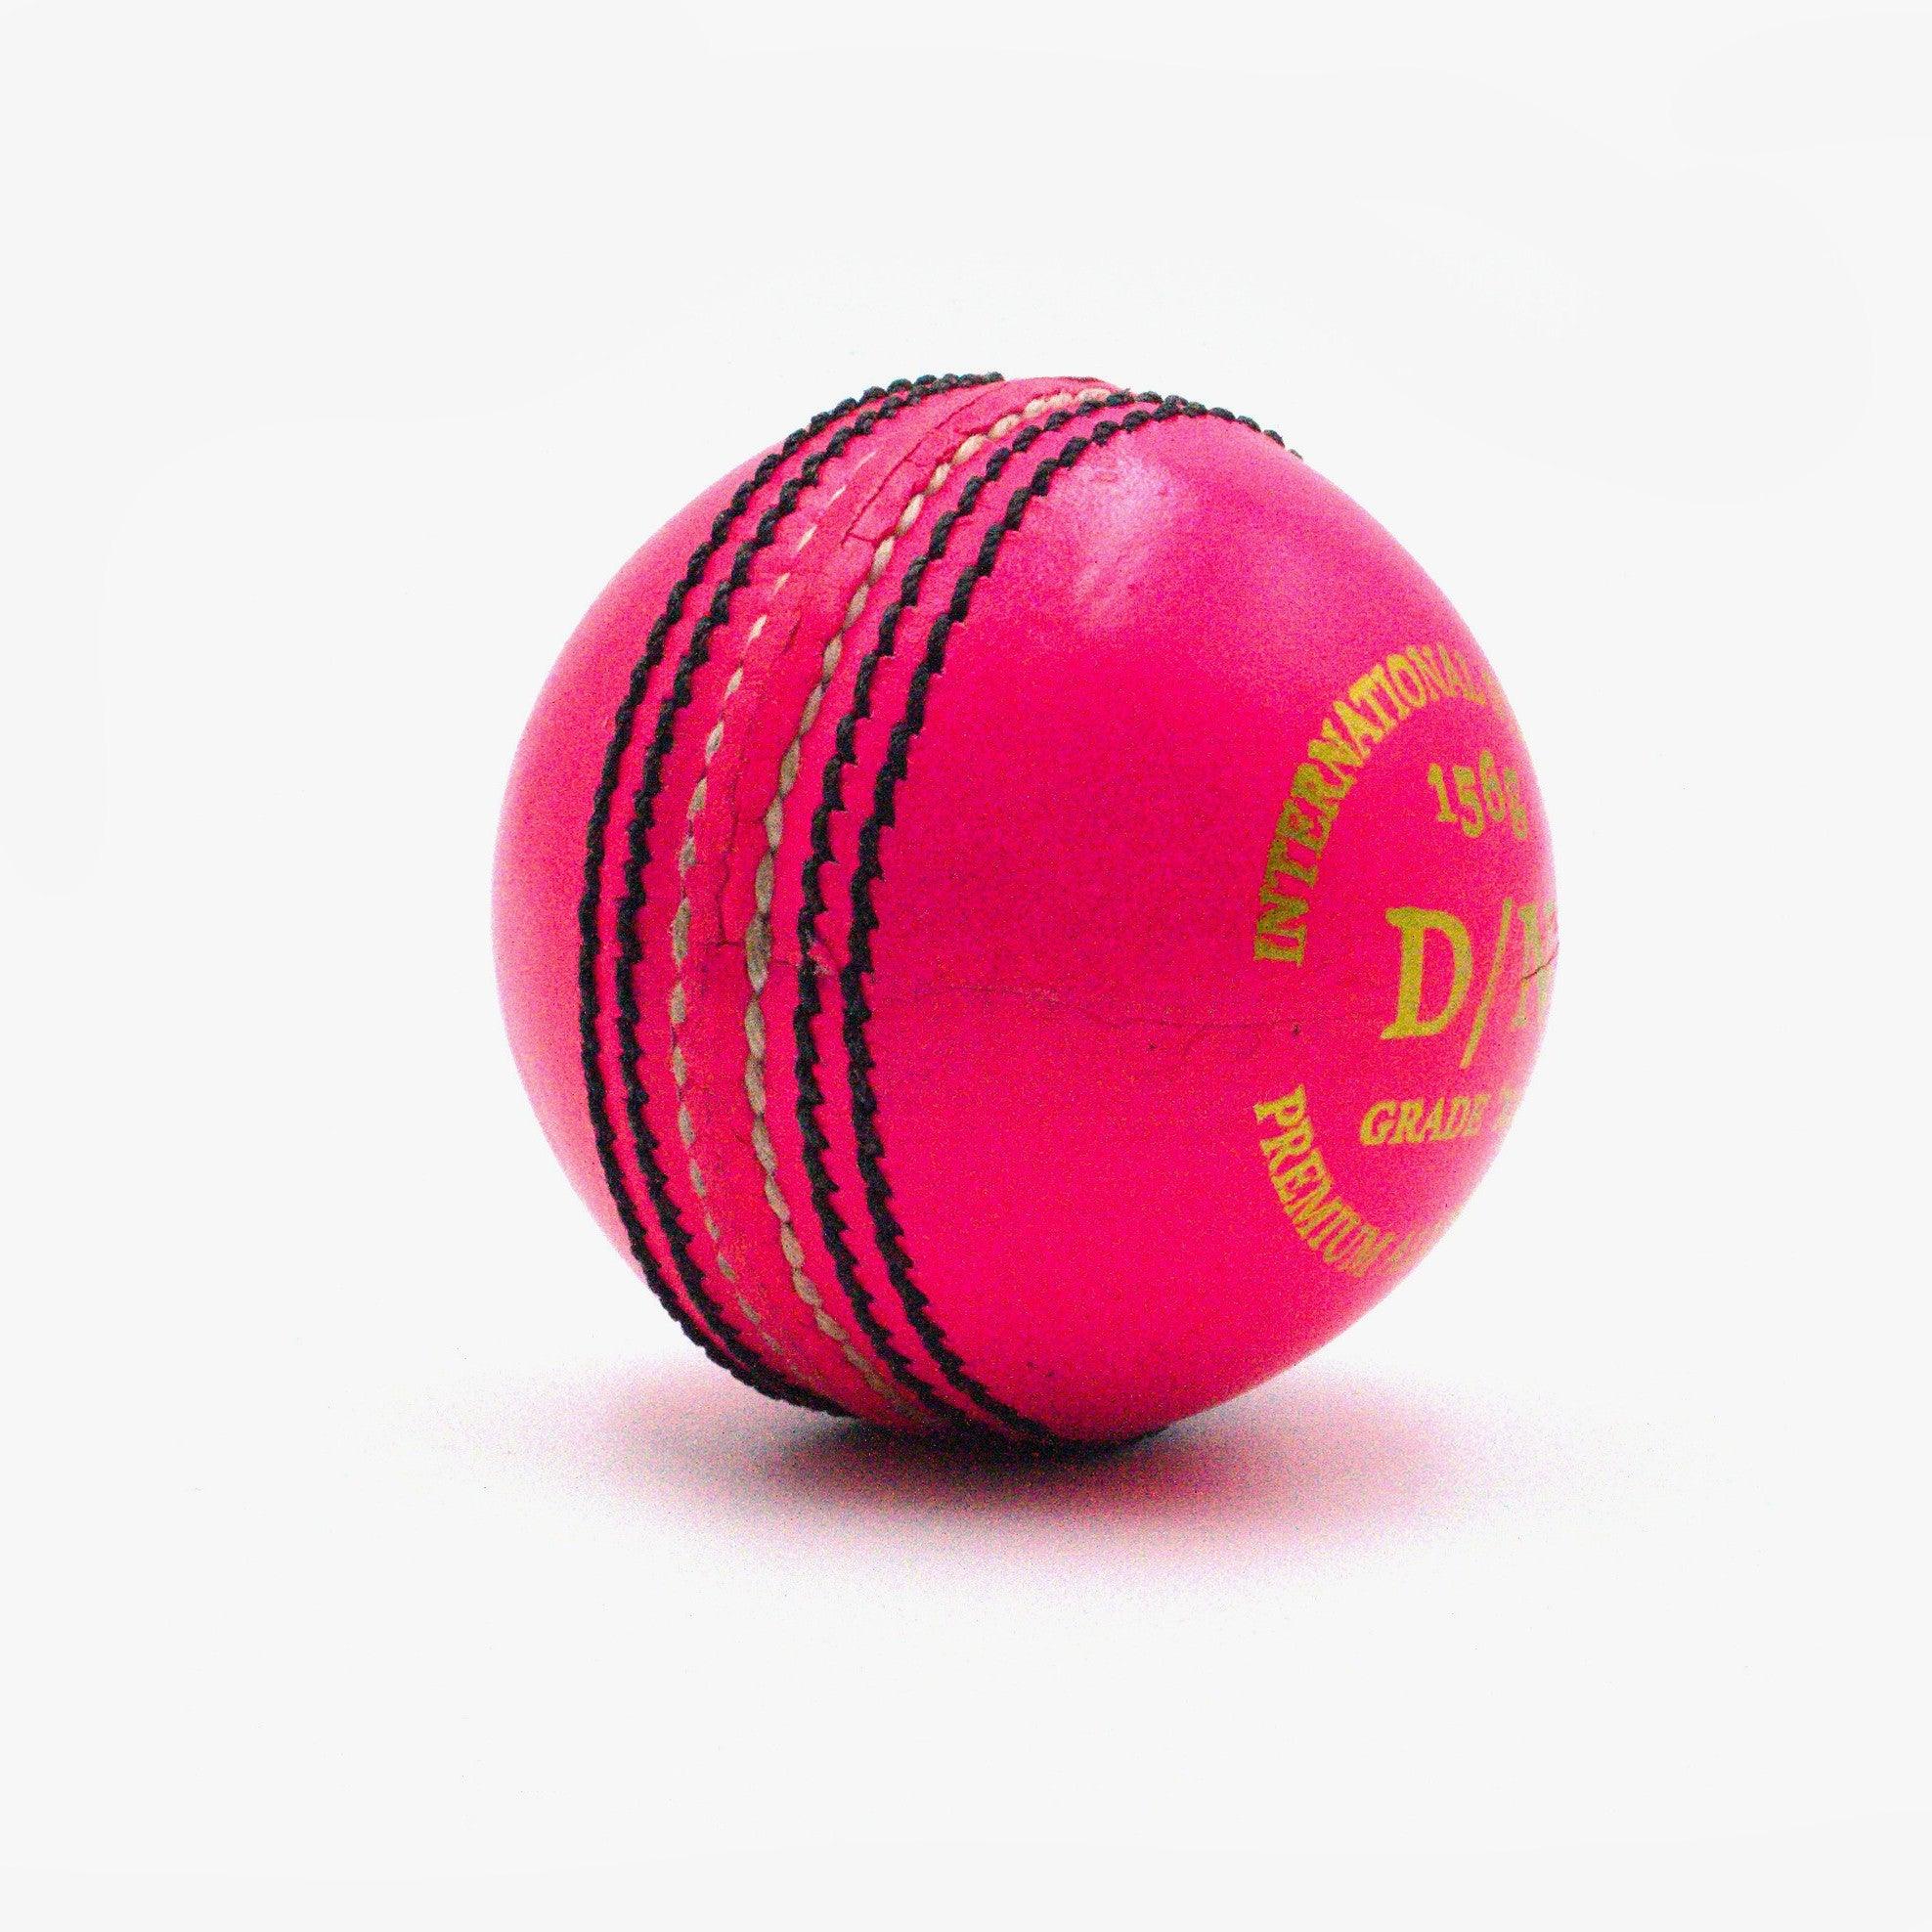 AT D/N 4pce PINK 156g Cricket Ball - AT Sports